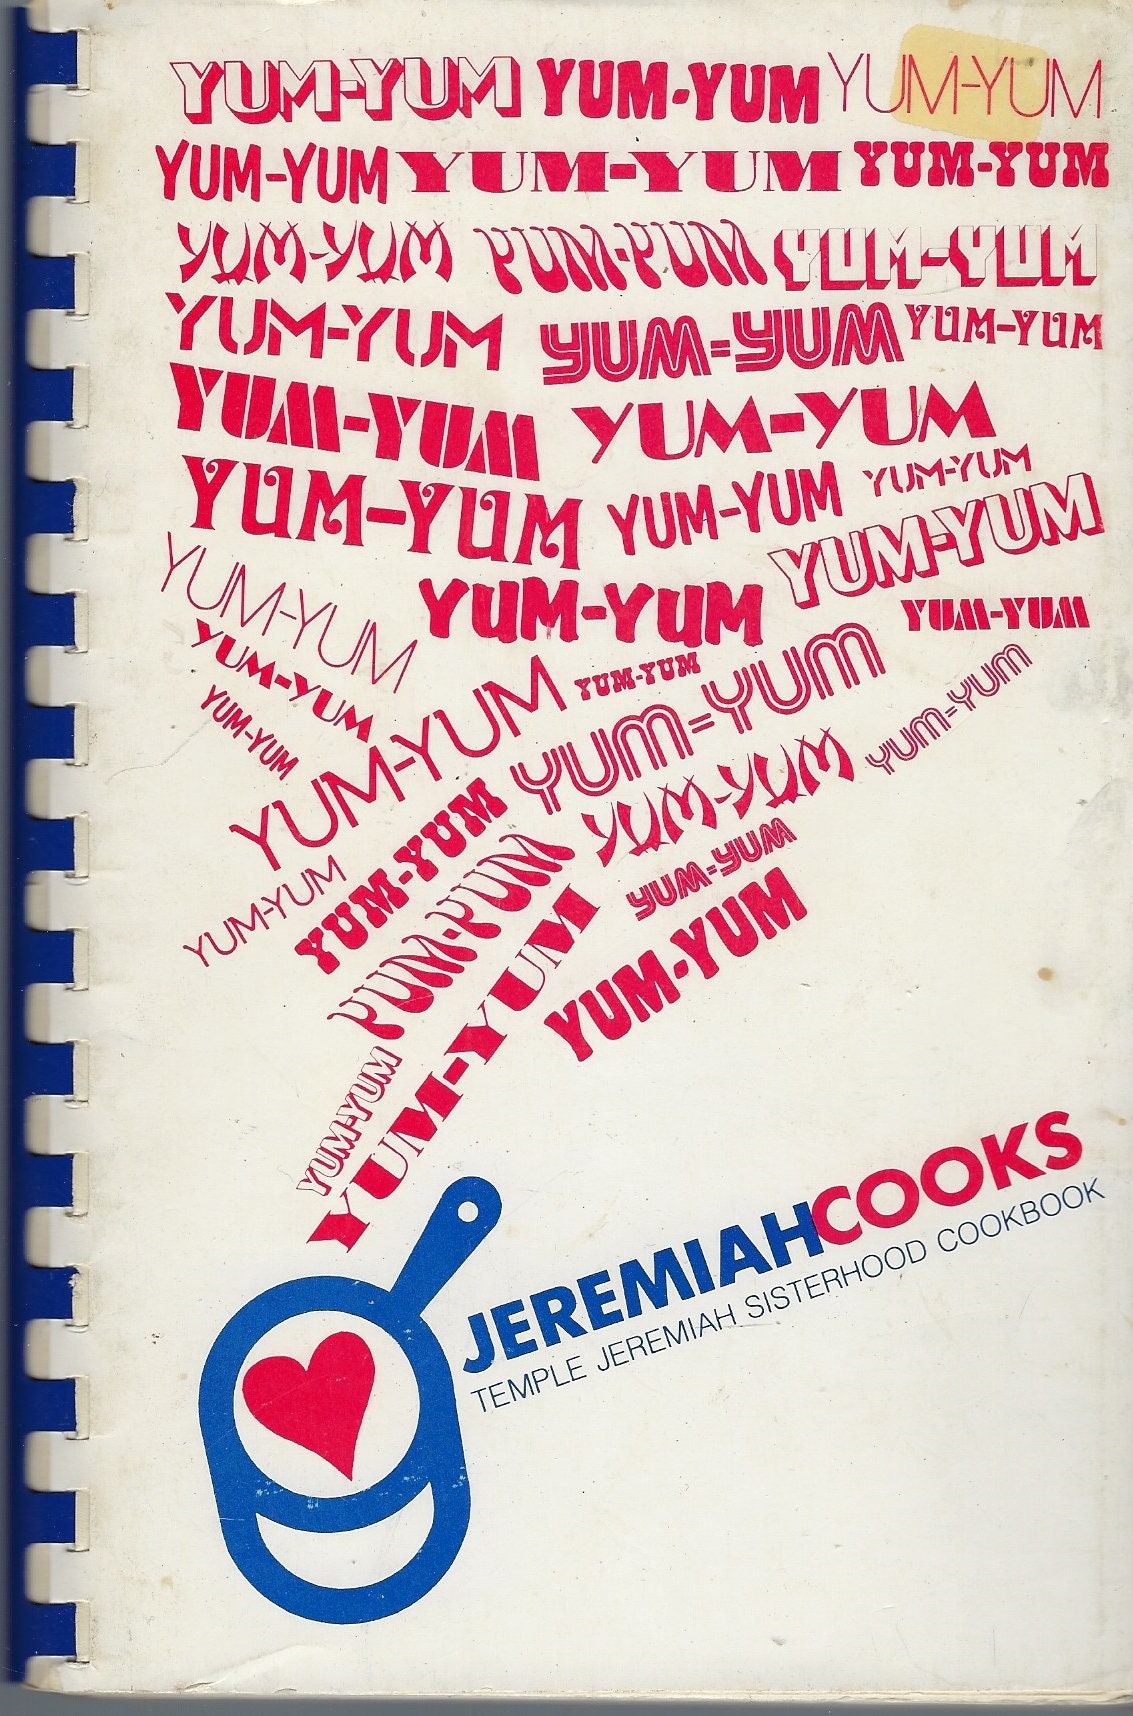 Northfield Illinois Vintage 1982 Temple Jeremiah Sisterhood Cooks Cookbook Ethnic Jewish Recipes Il Community Favorites Rare Local Cook Book